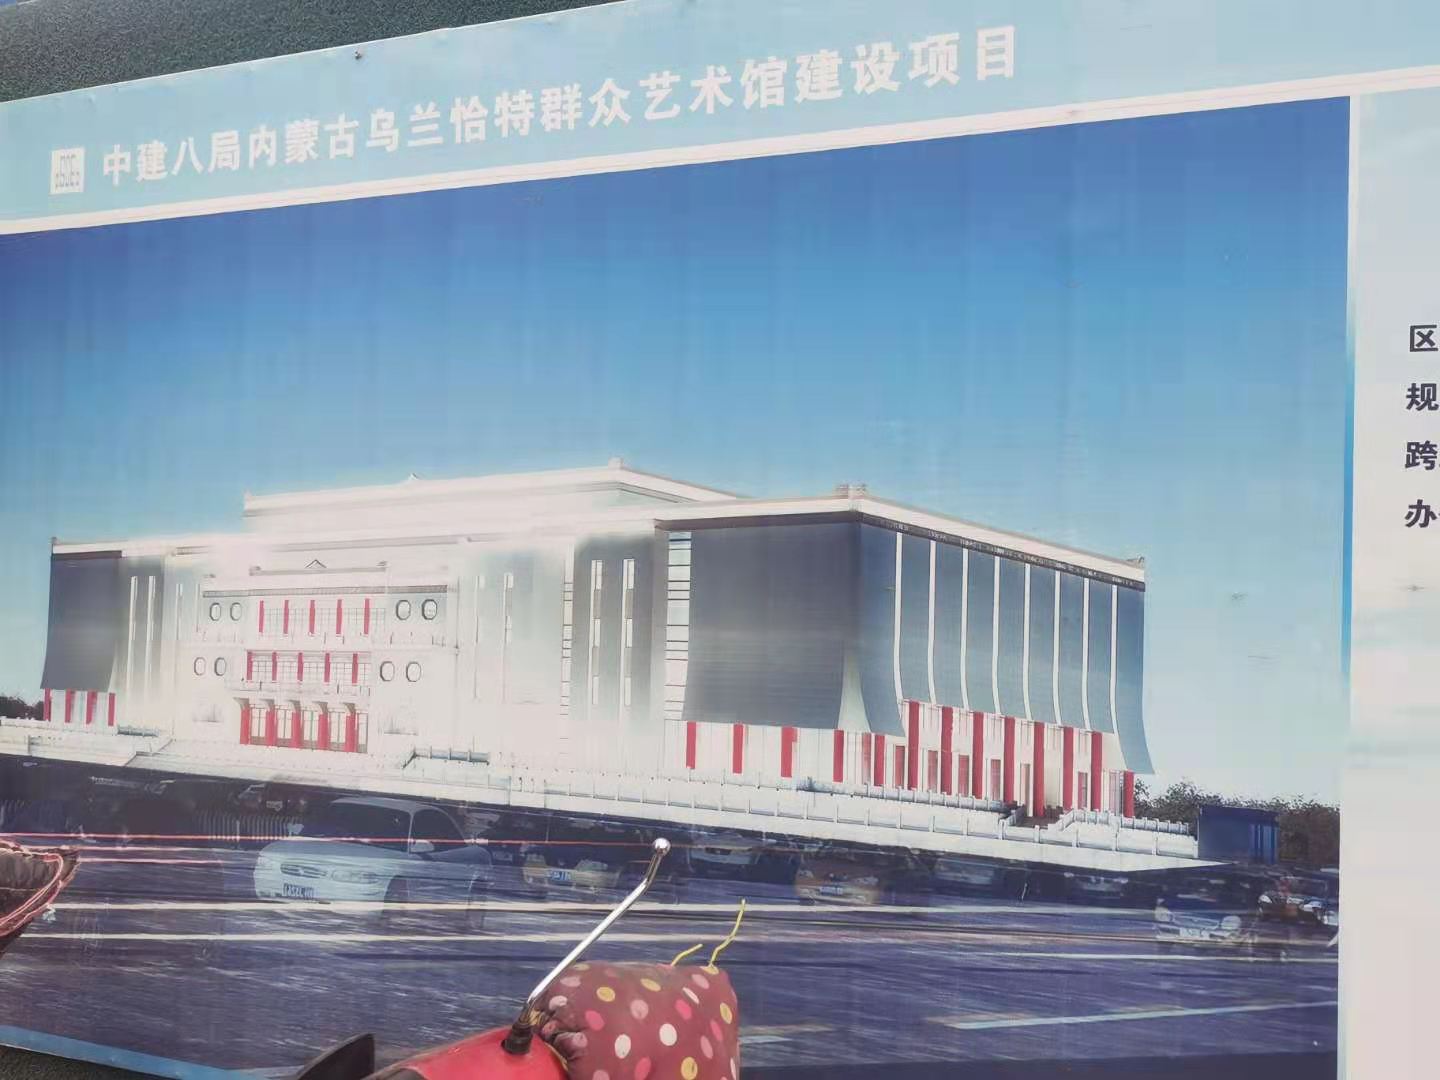 中国建筑第八工程局内蒙古乌兰恰特群众艺术馆项目